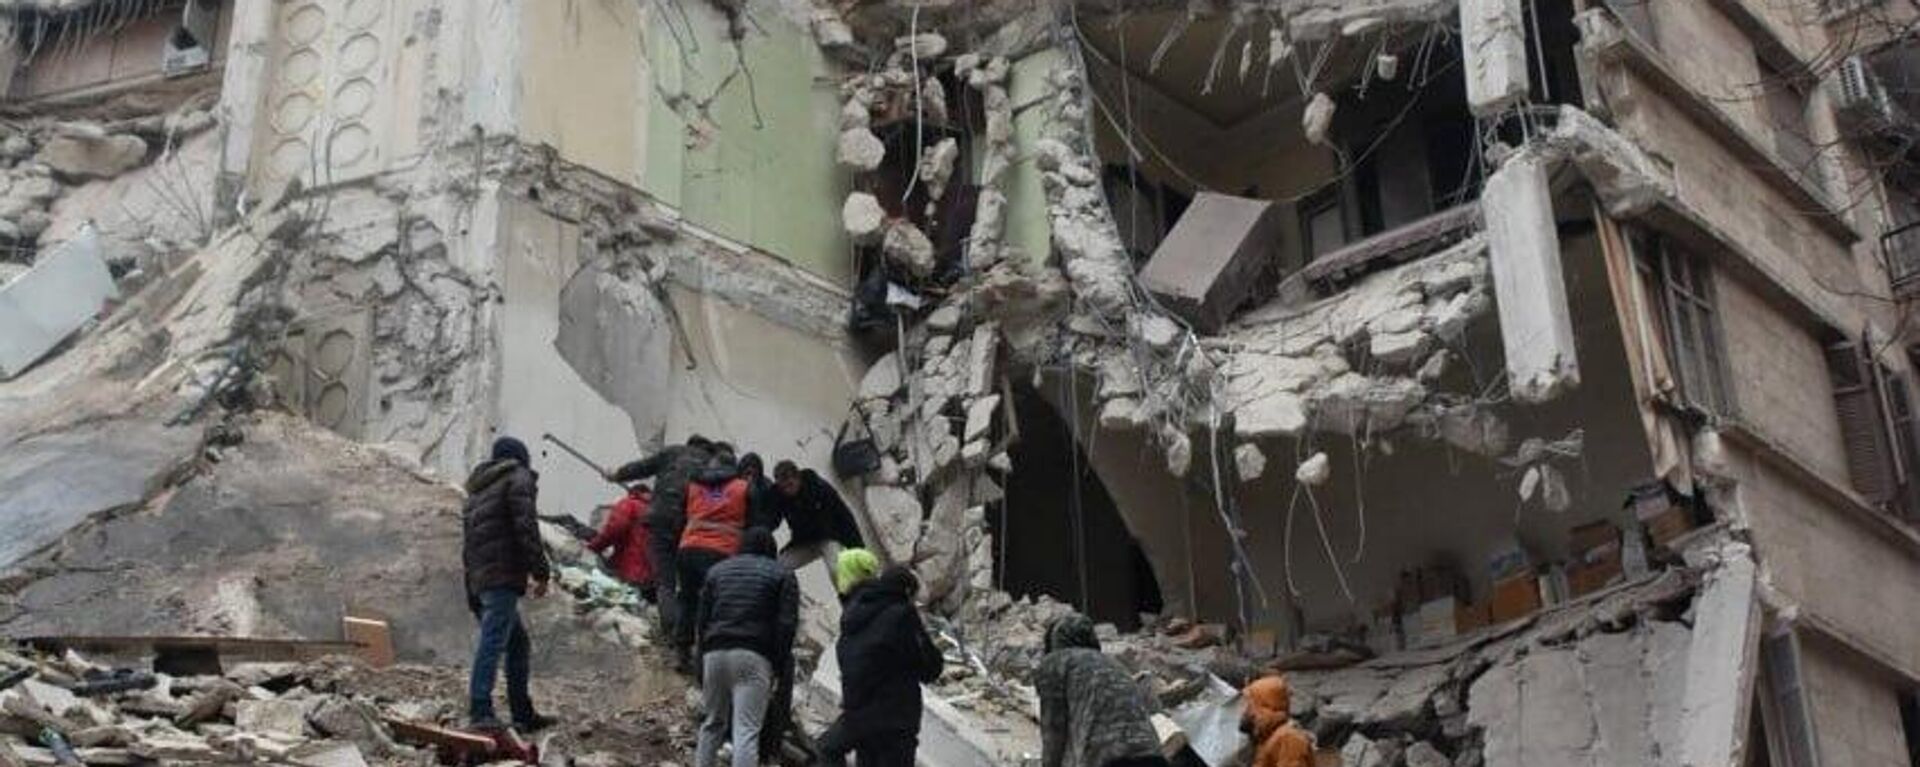 زلزال مدمر بقوة 7.8 درجة يضرب سوريا - سبوتنيك عربي, 1920, 06.02.2023